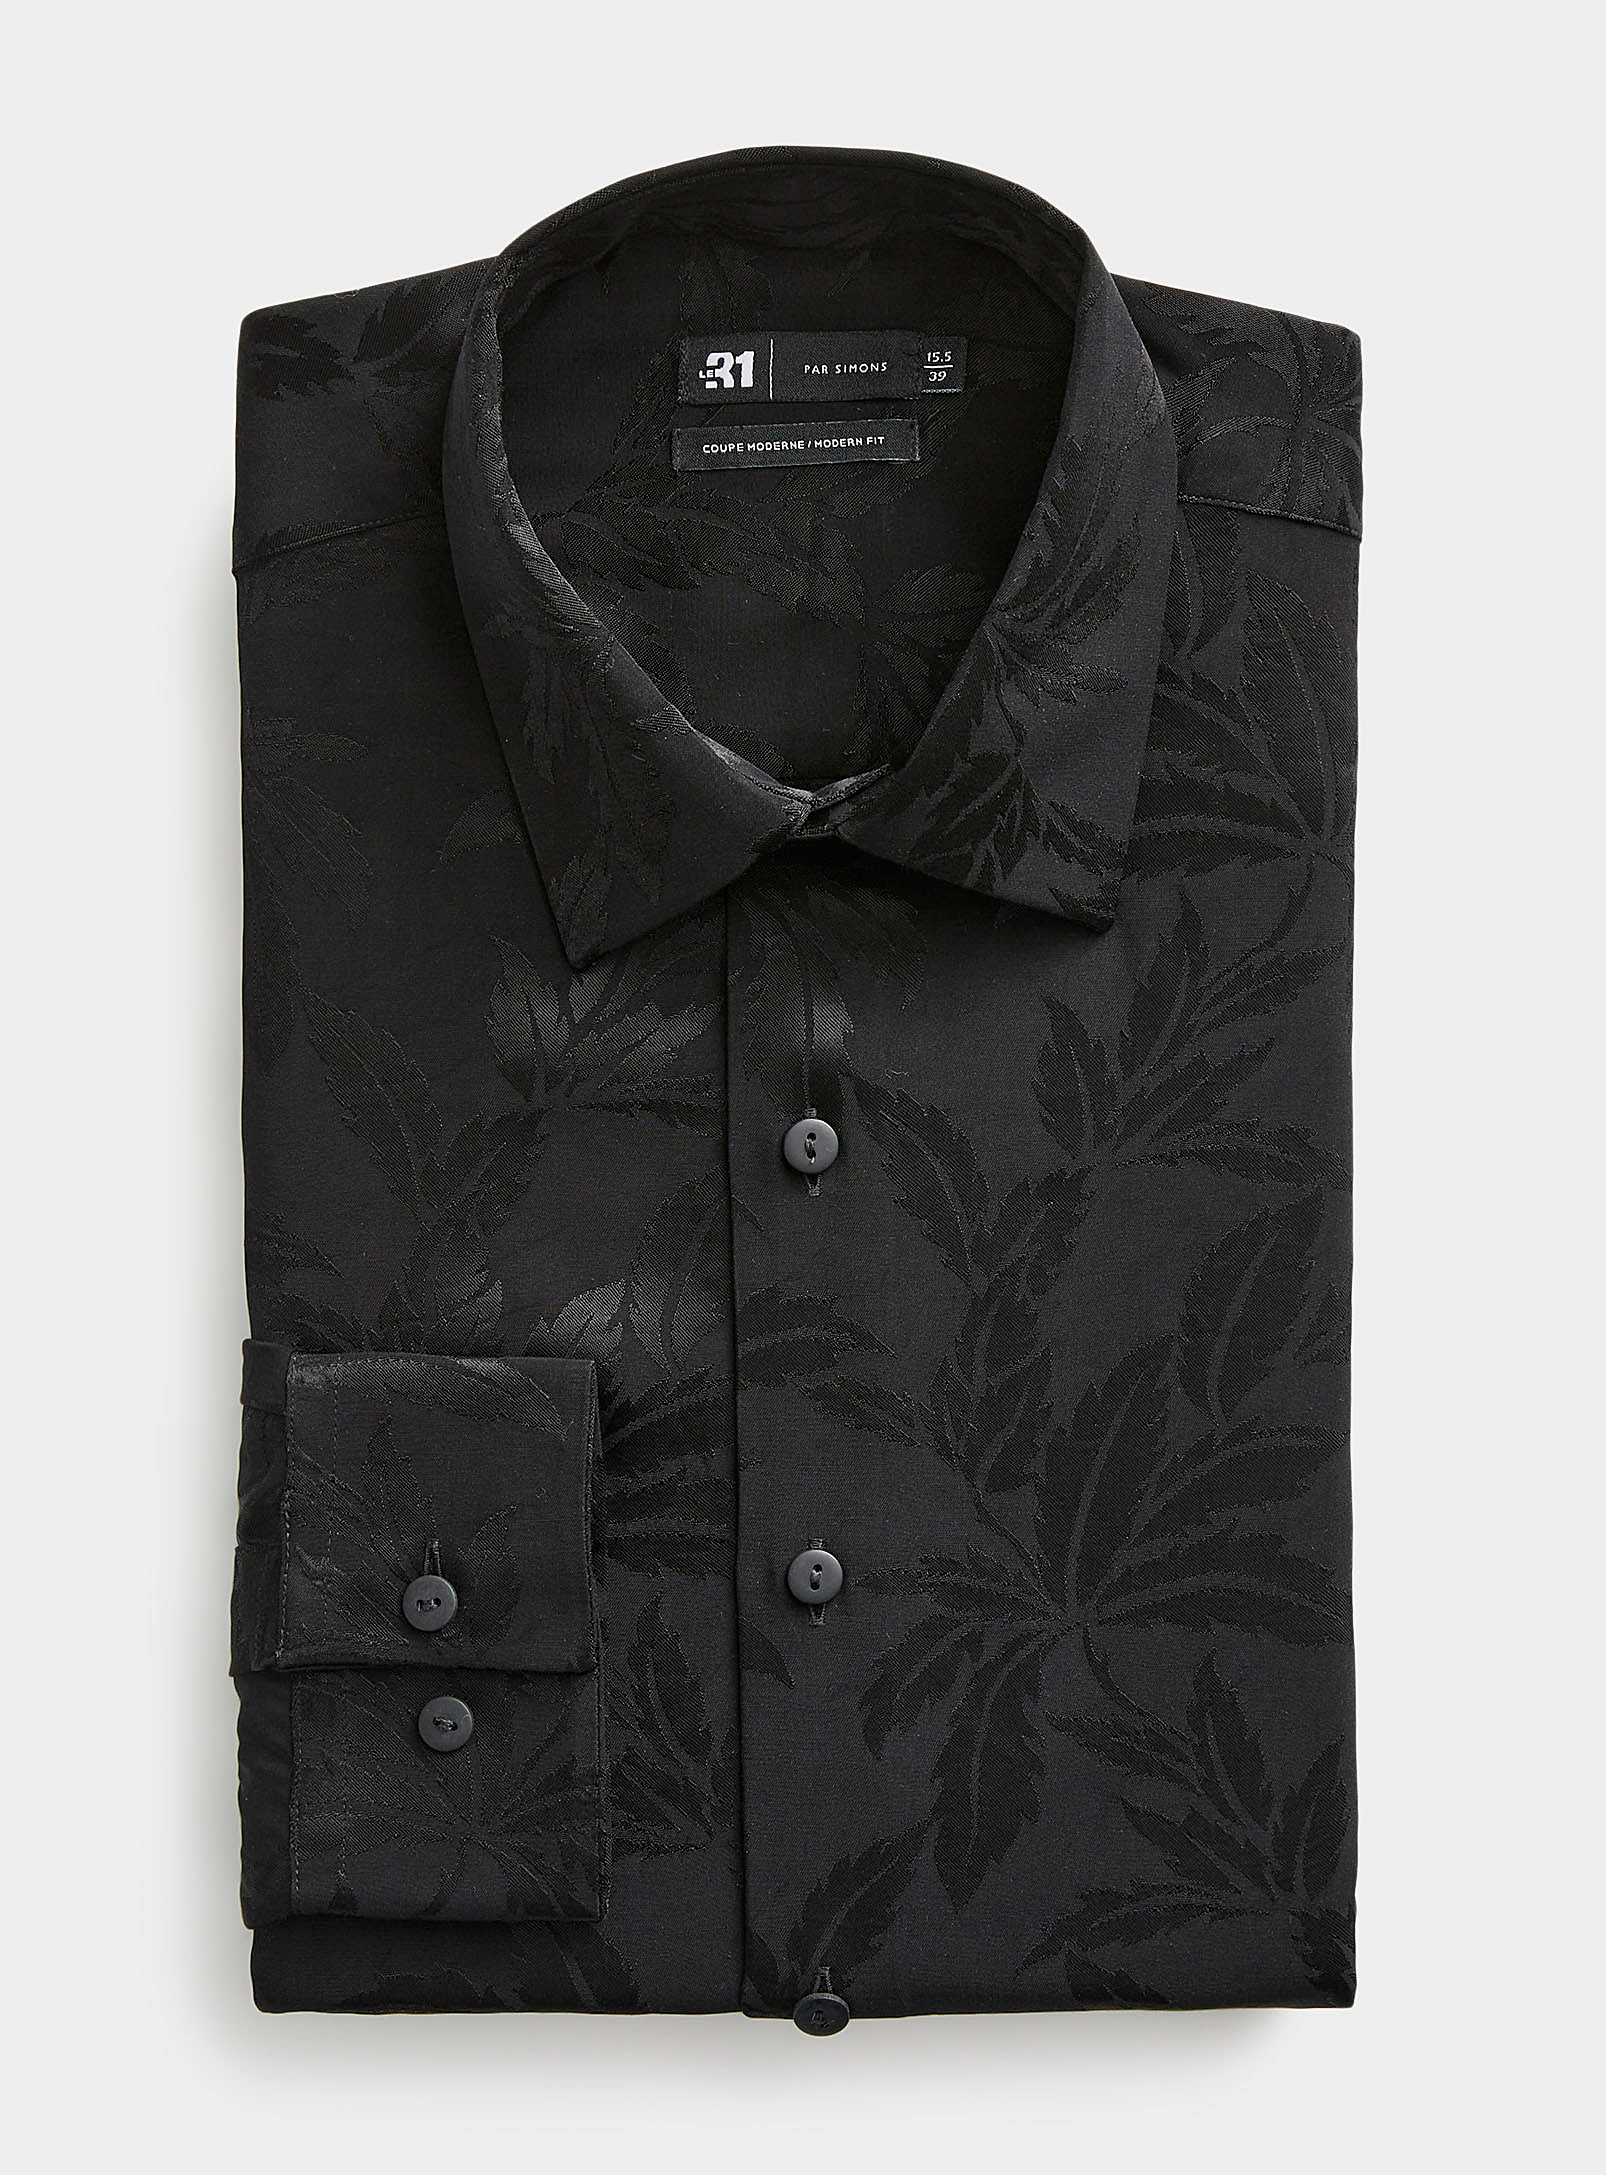 Le 31 - Men's Satiny foliage fluid shirt Modern fit